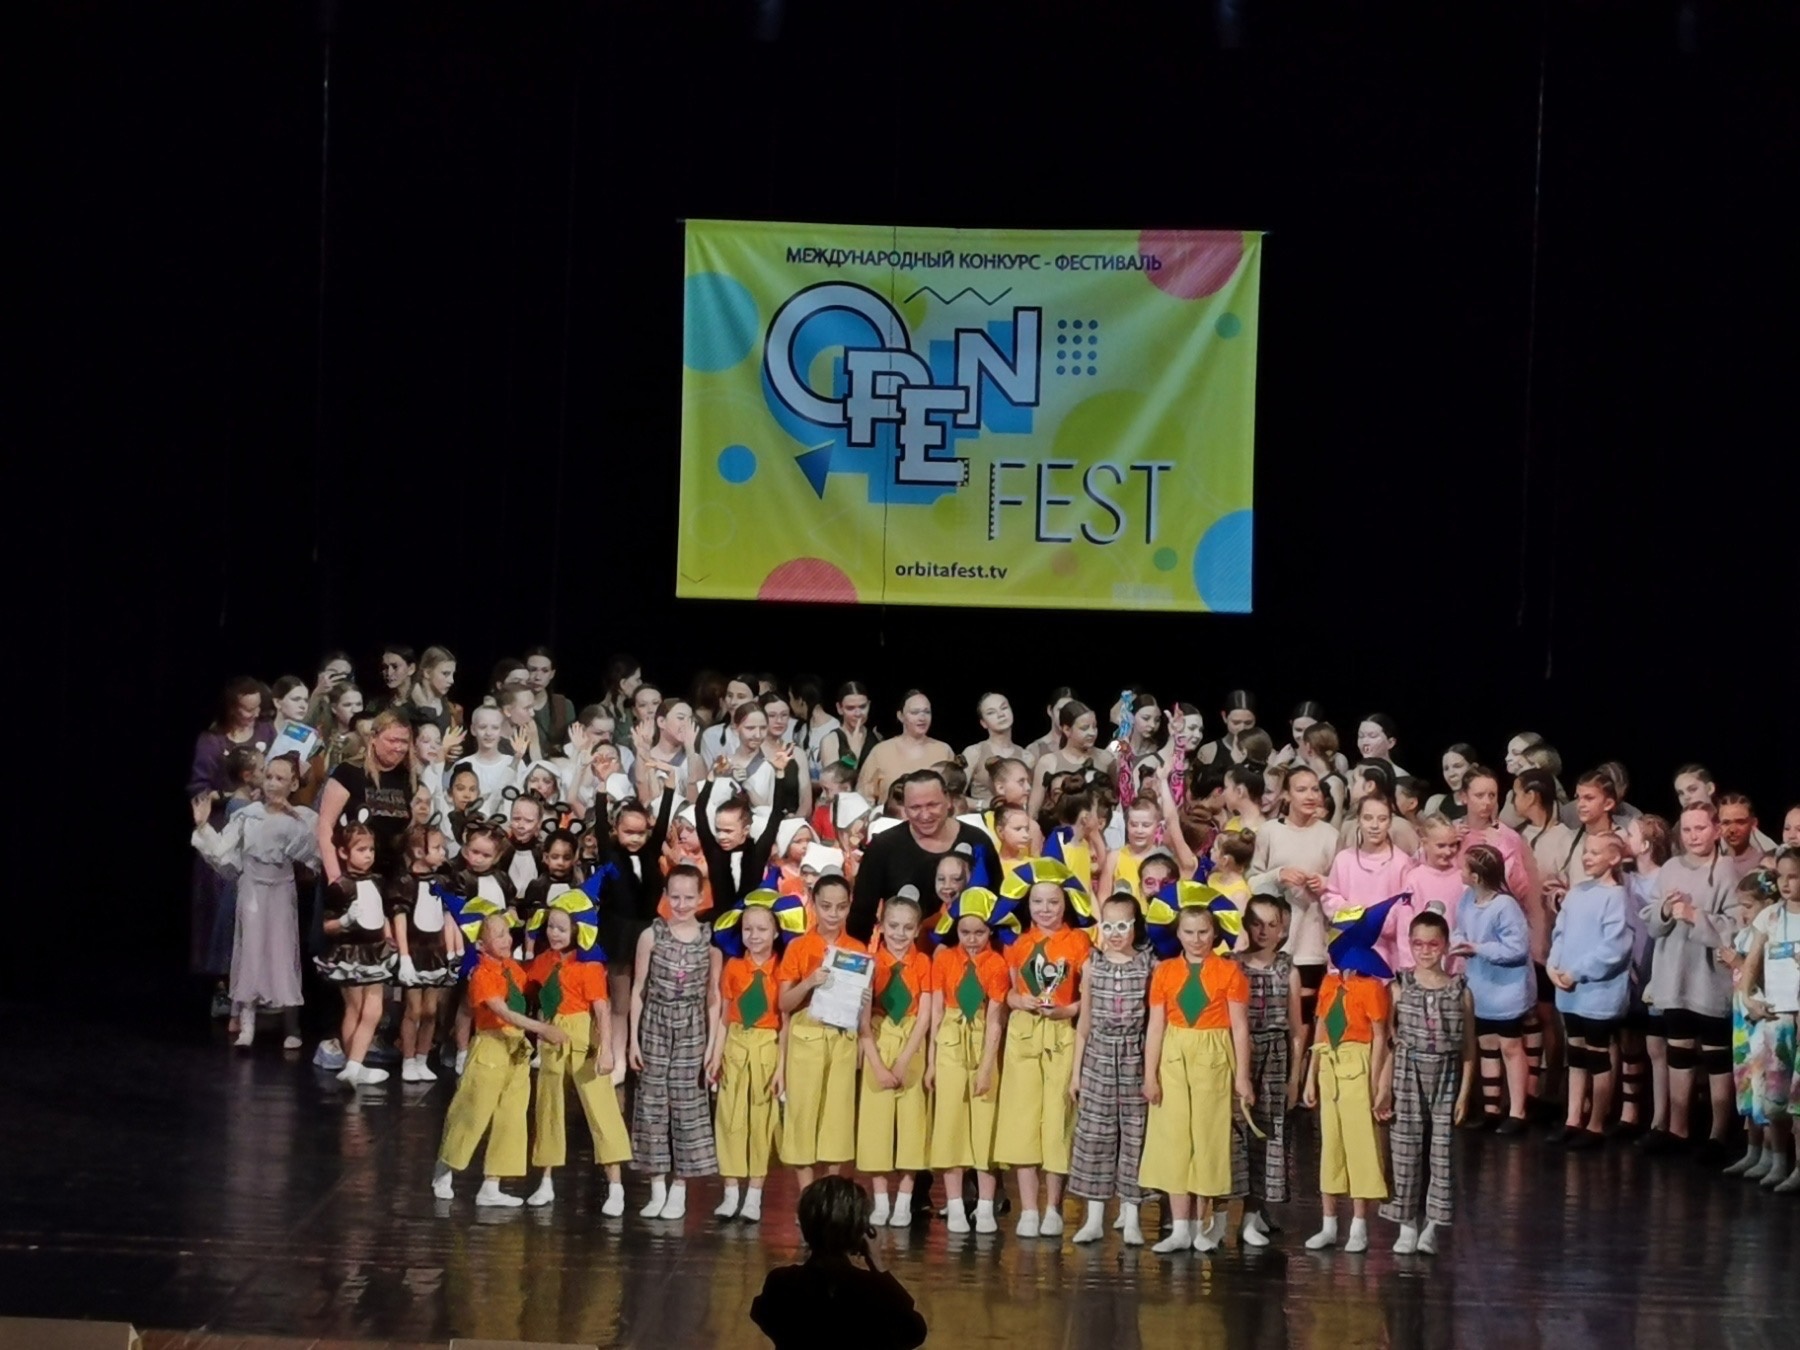 Ансамбль «Непоседы» стали лауреатами на Международном конкурсе-фестивале «OPEN FEST»